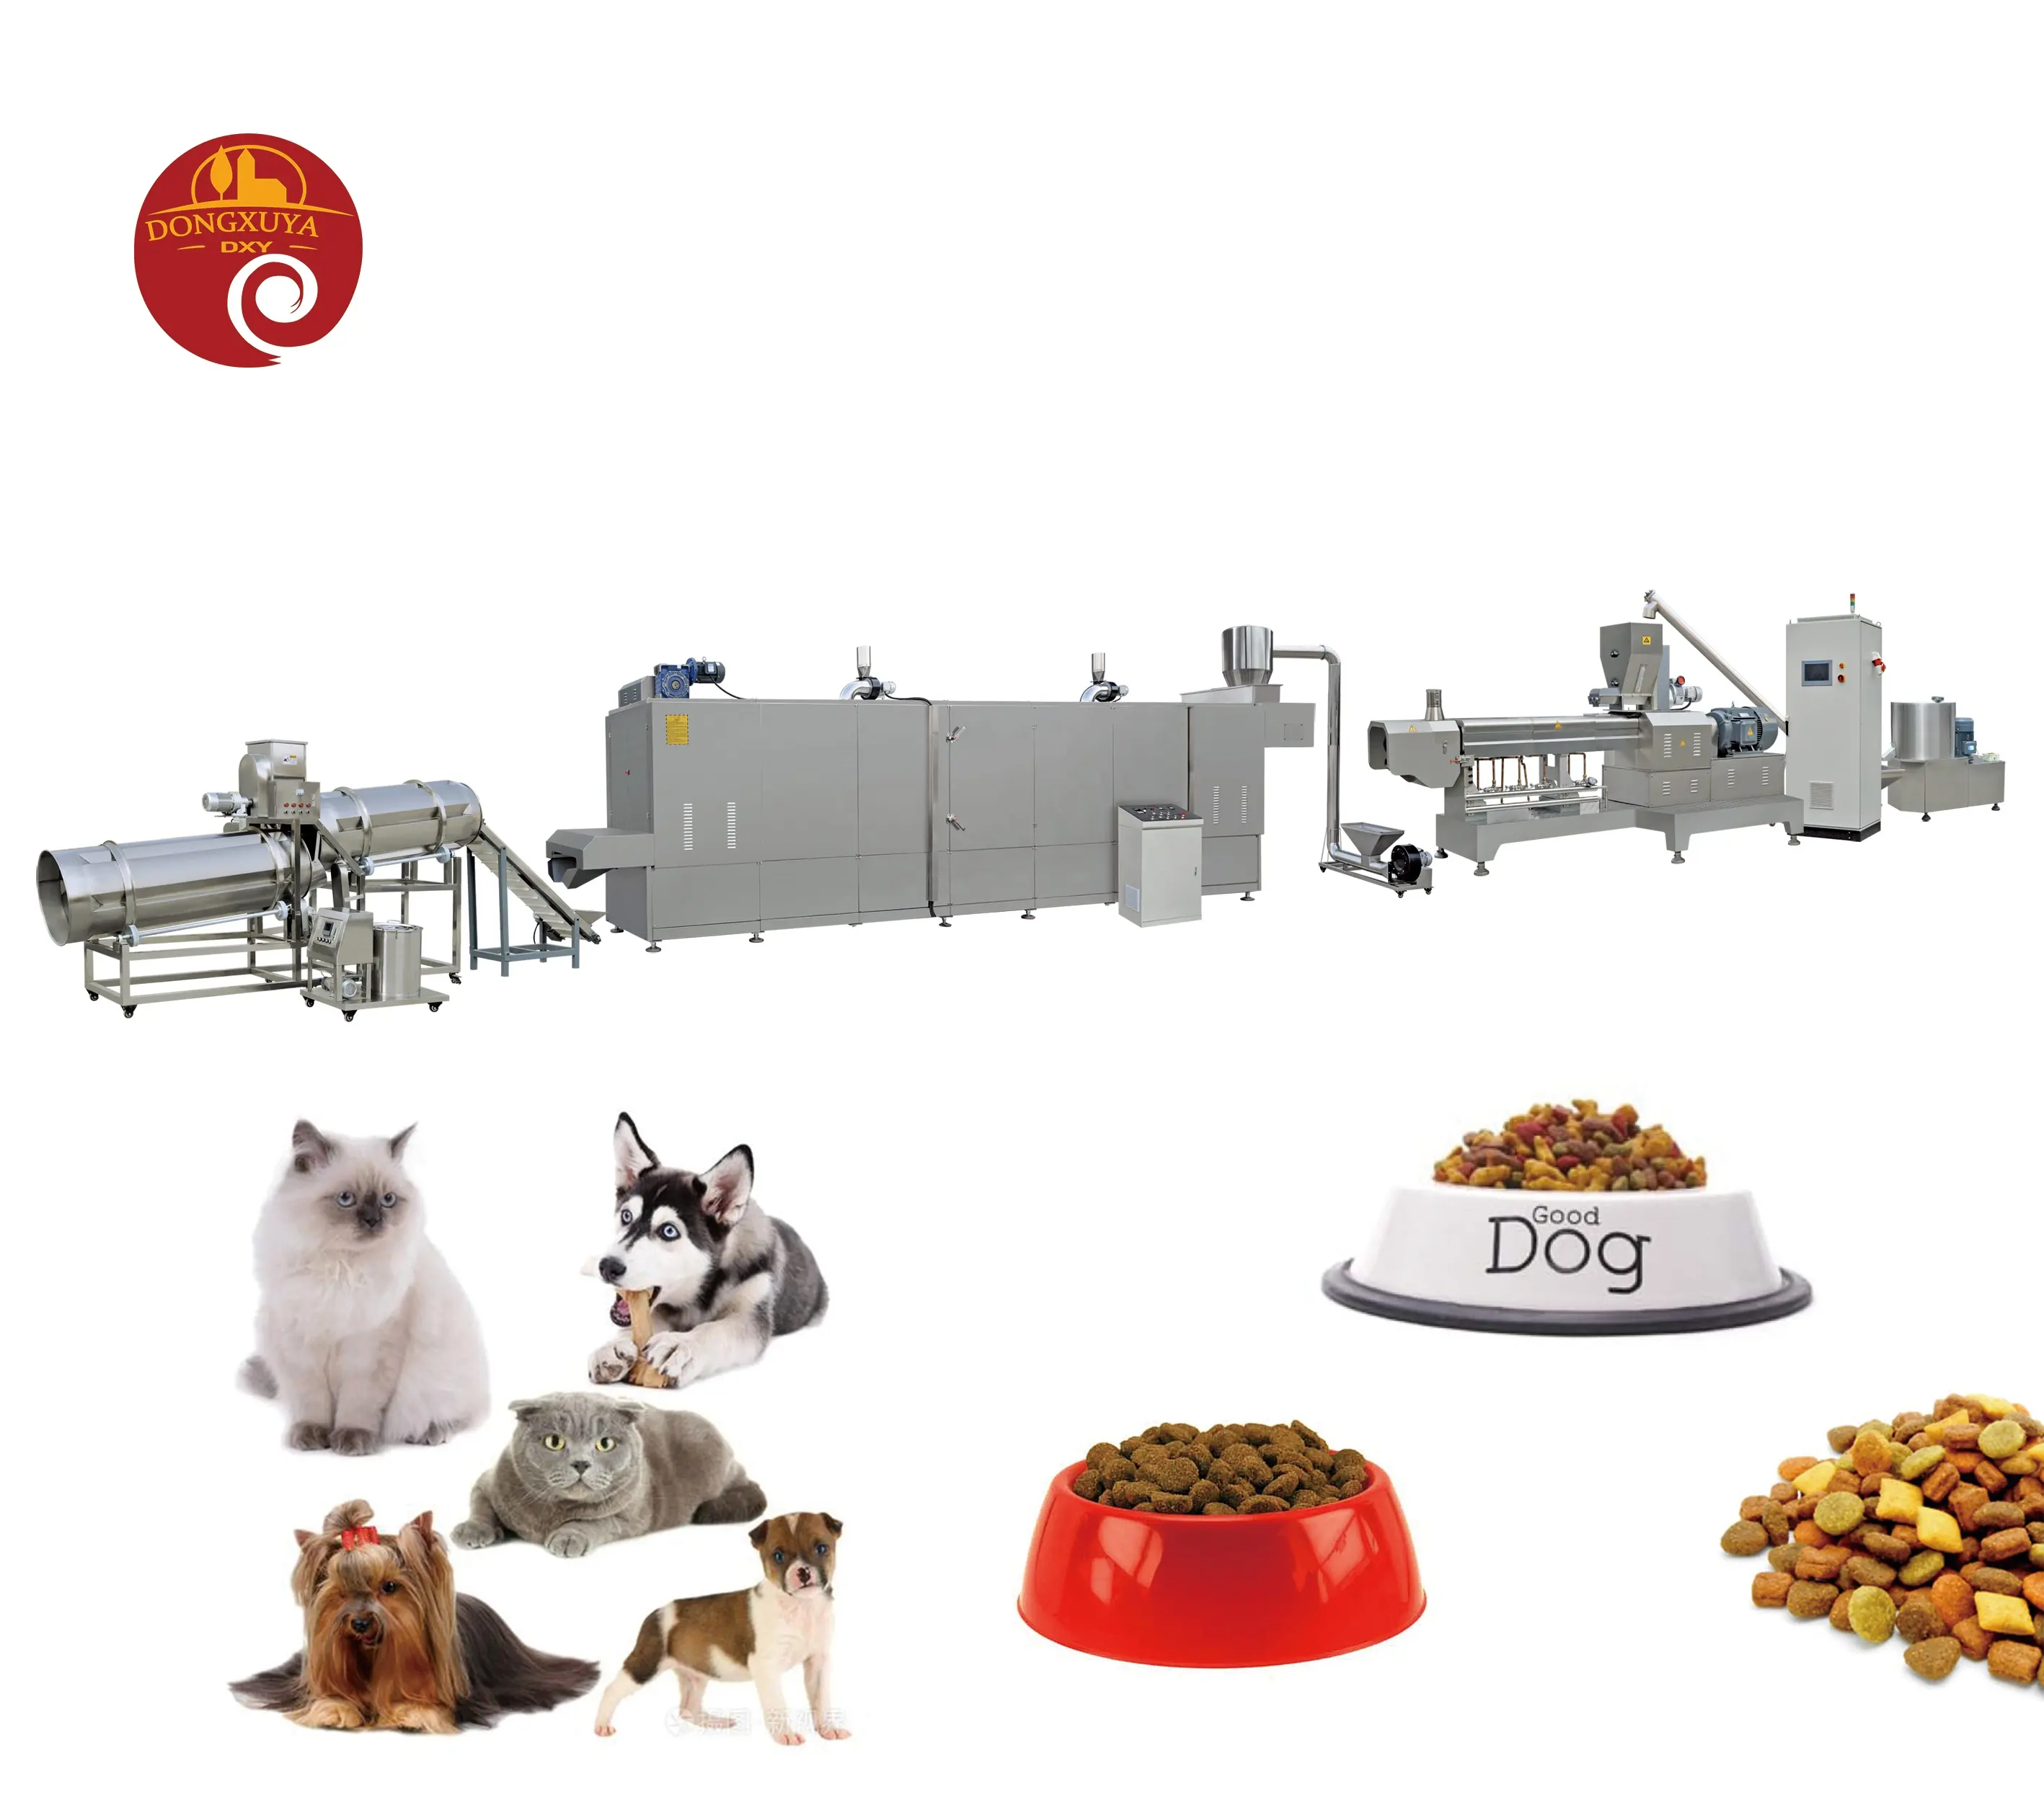 ماكينة عالية السعة لإعداد طعام الحيوانات الأليفة طعام الكلاب خط إنتاج ماكينة طعام الحيوانات / طعام الحيوانات الأليفة أوتوماتيكي بالكامل